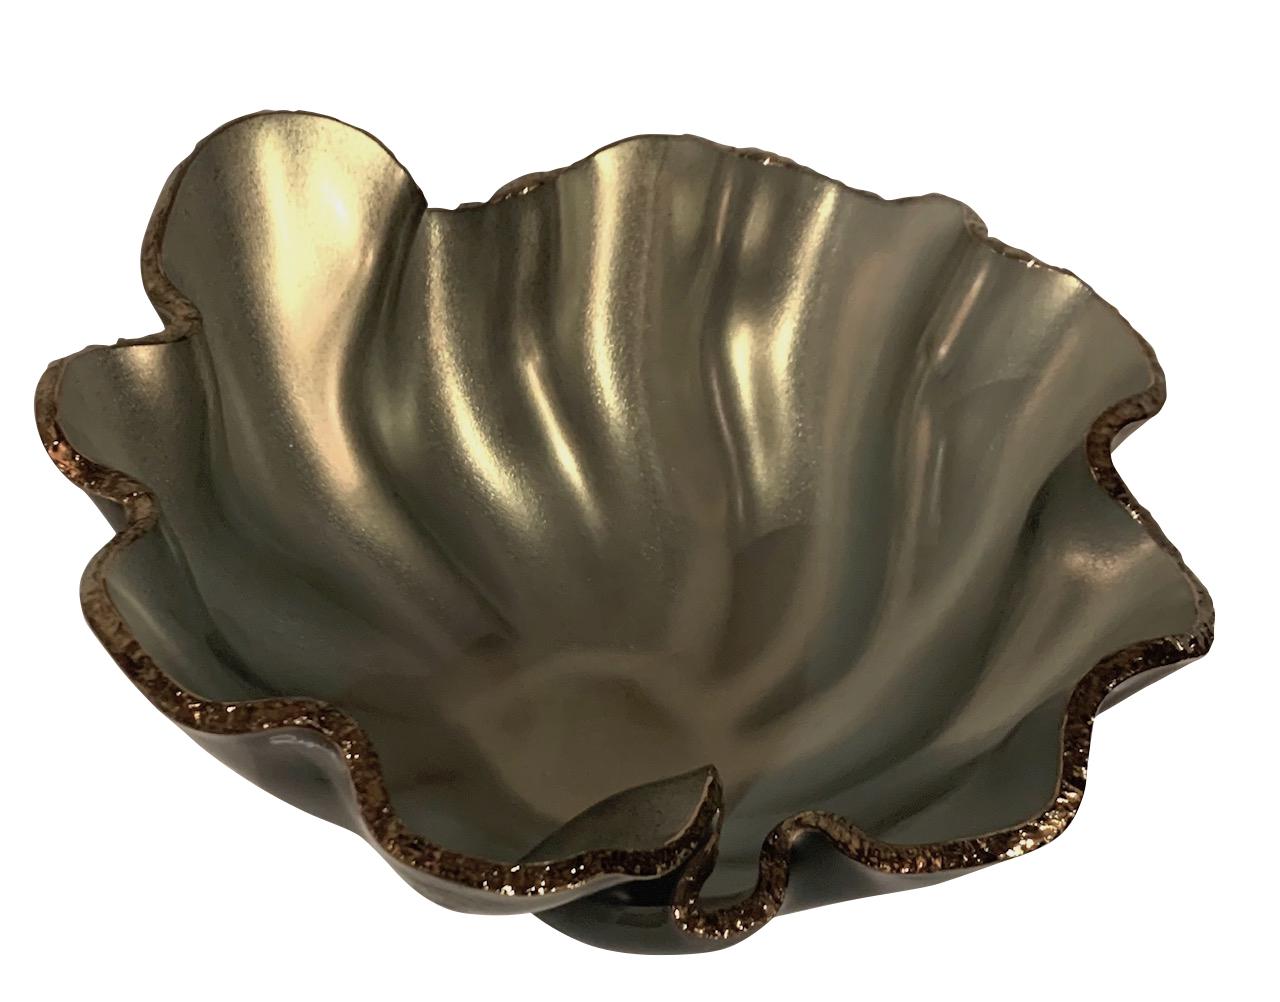 Brazilian Silver Color Free Form Glass Bowl, Brazil, Contemporary